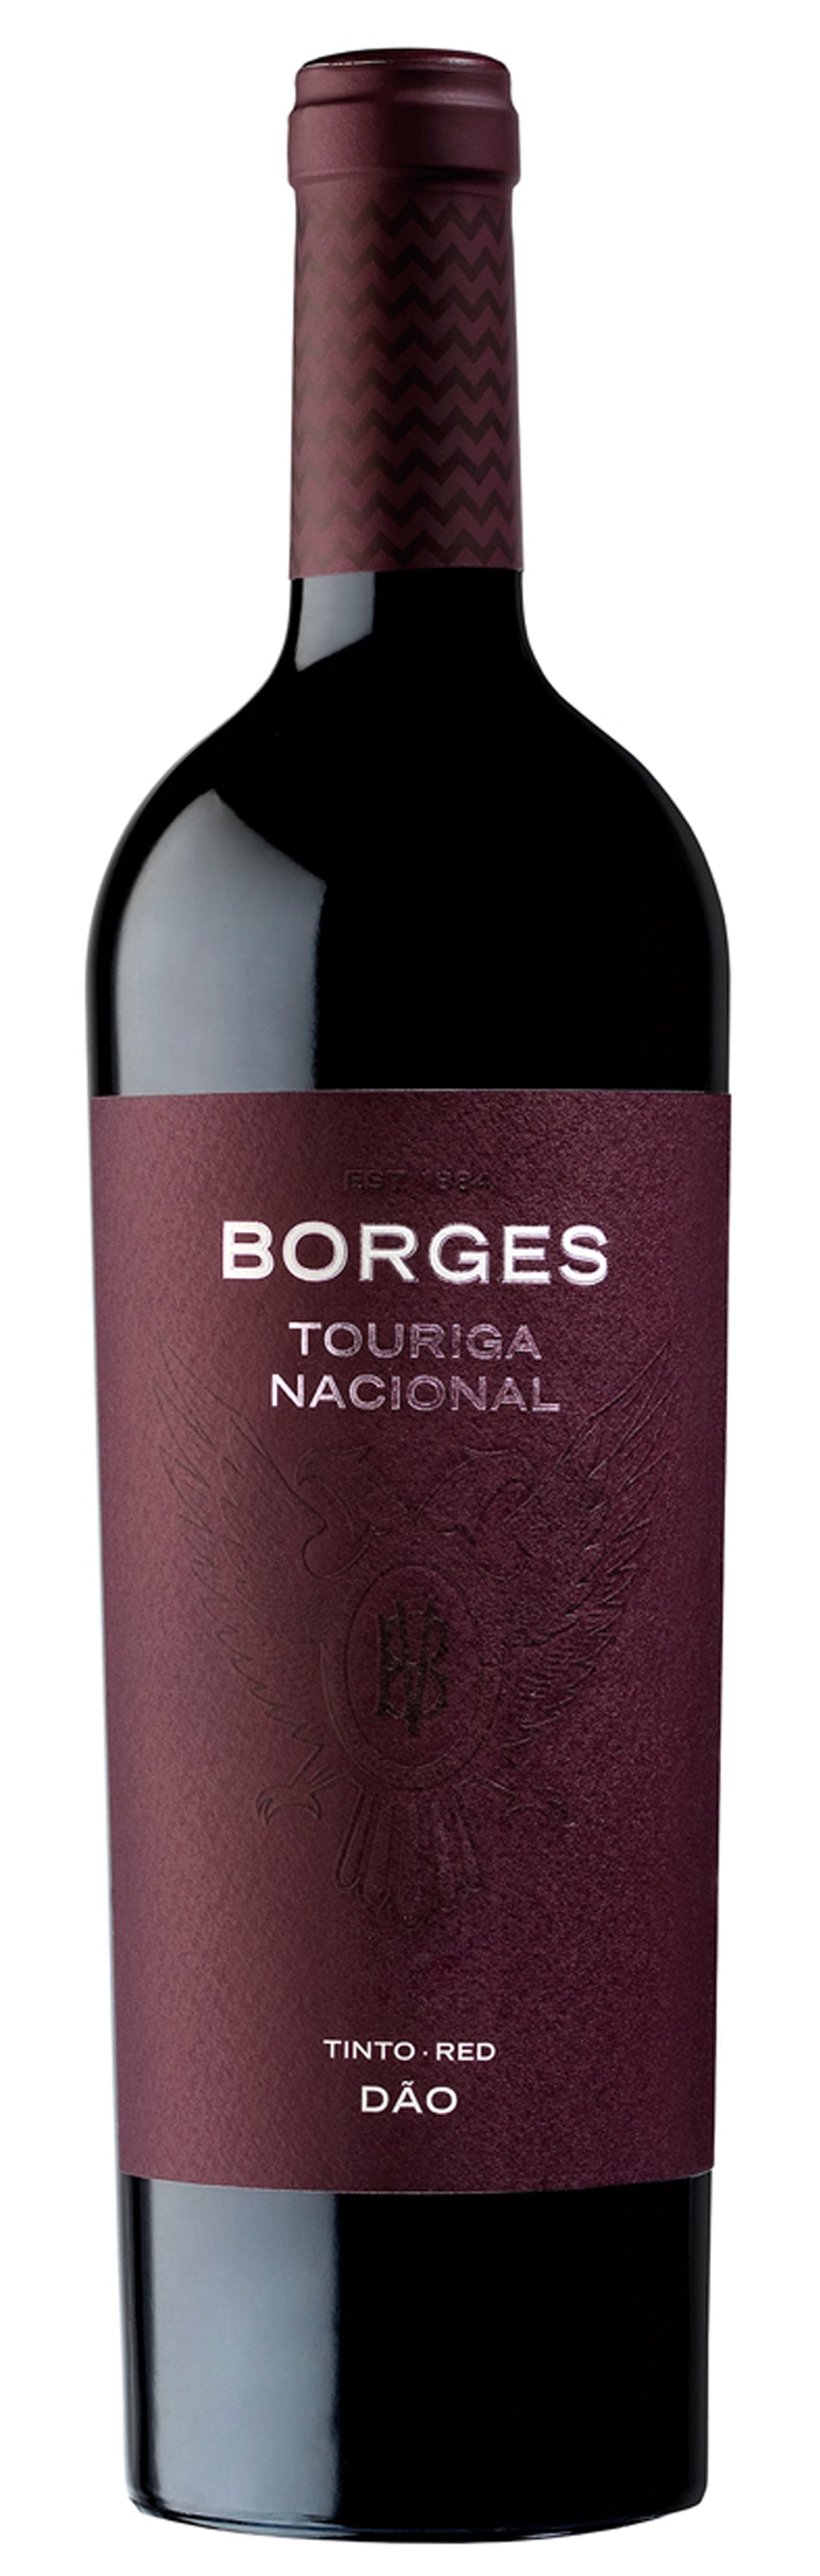 RED BOX - Die 3 Reserva Weine von Vinhos Borges